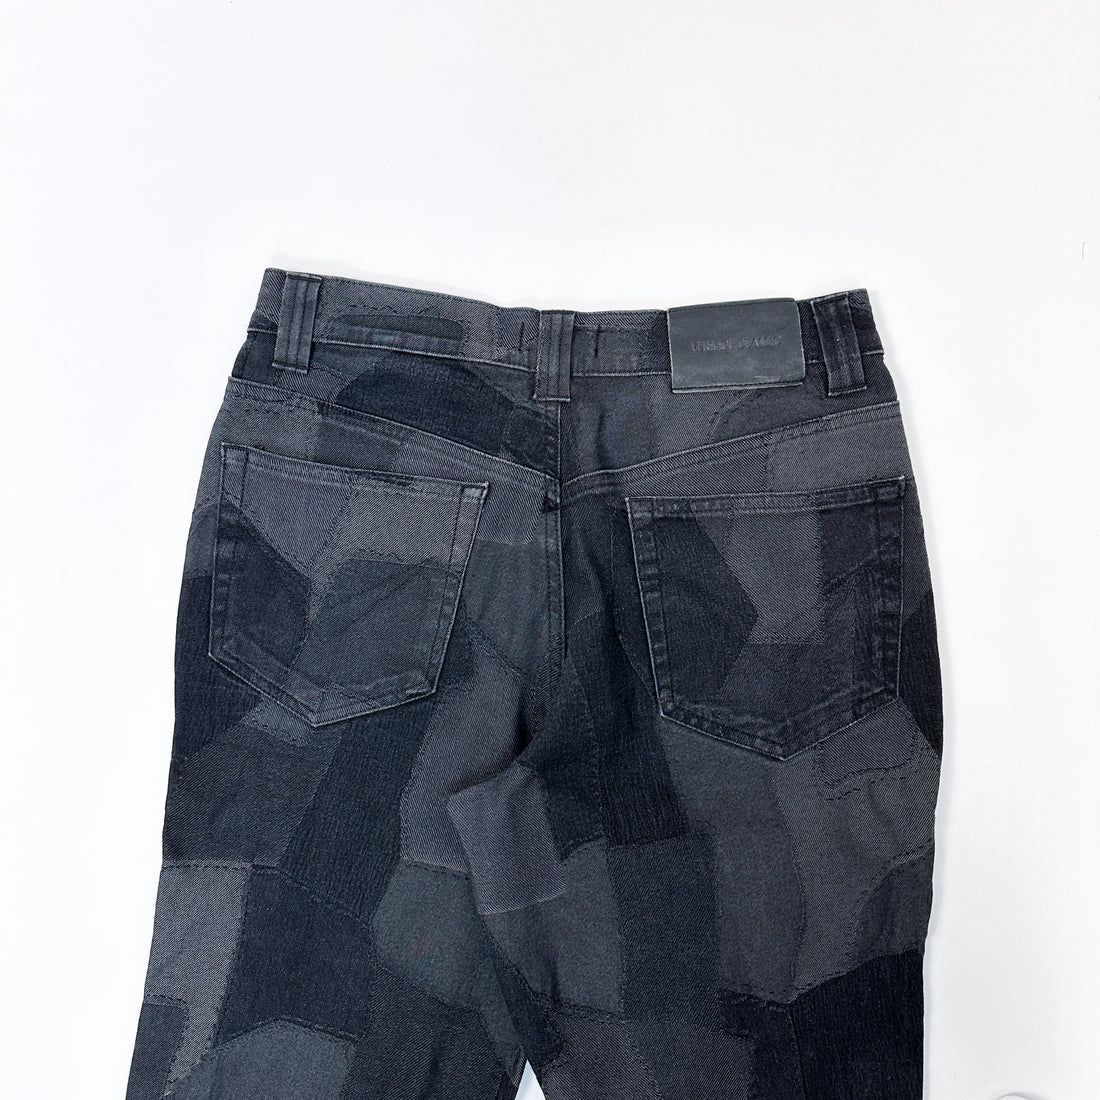 Versace Black Patch Denim Pants 1990's